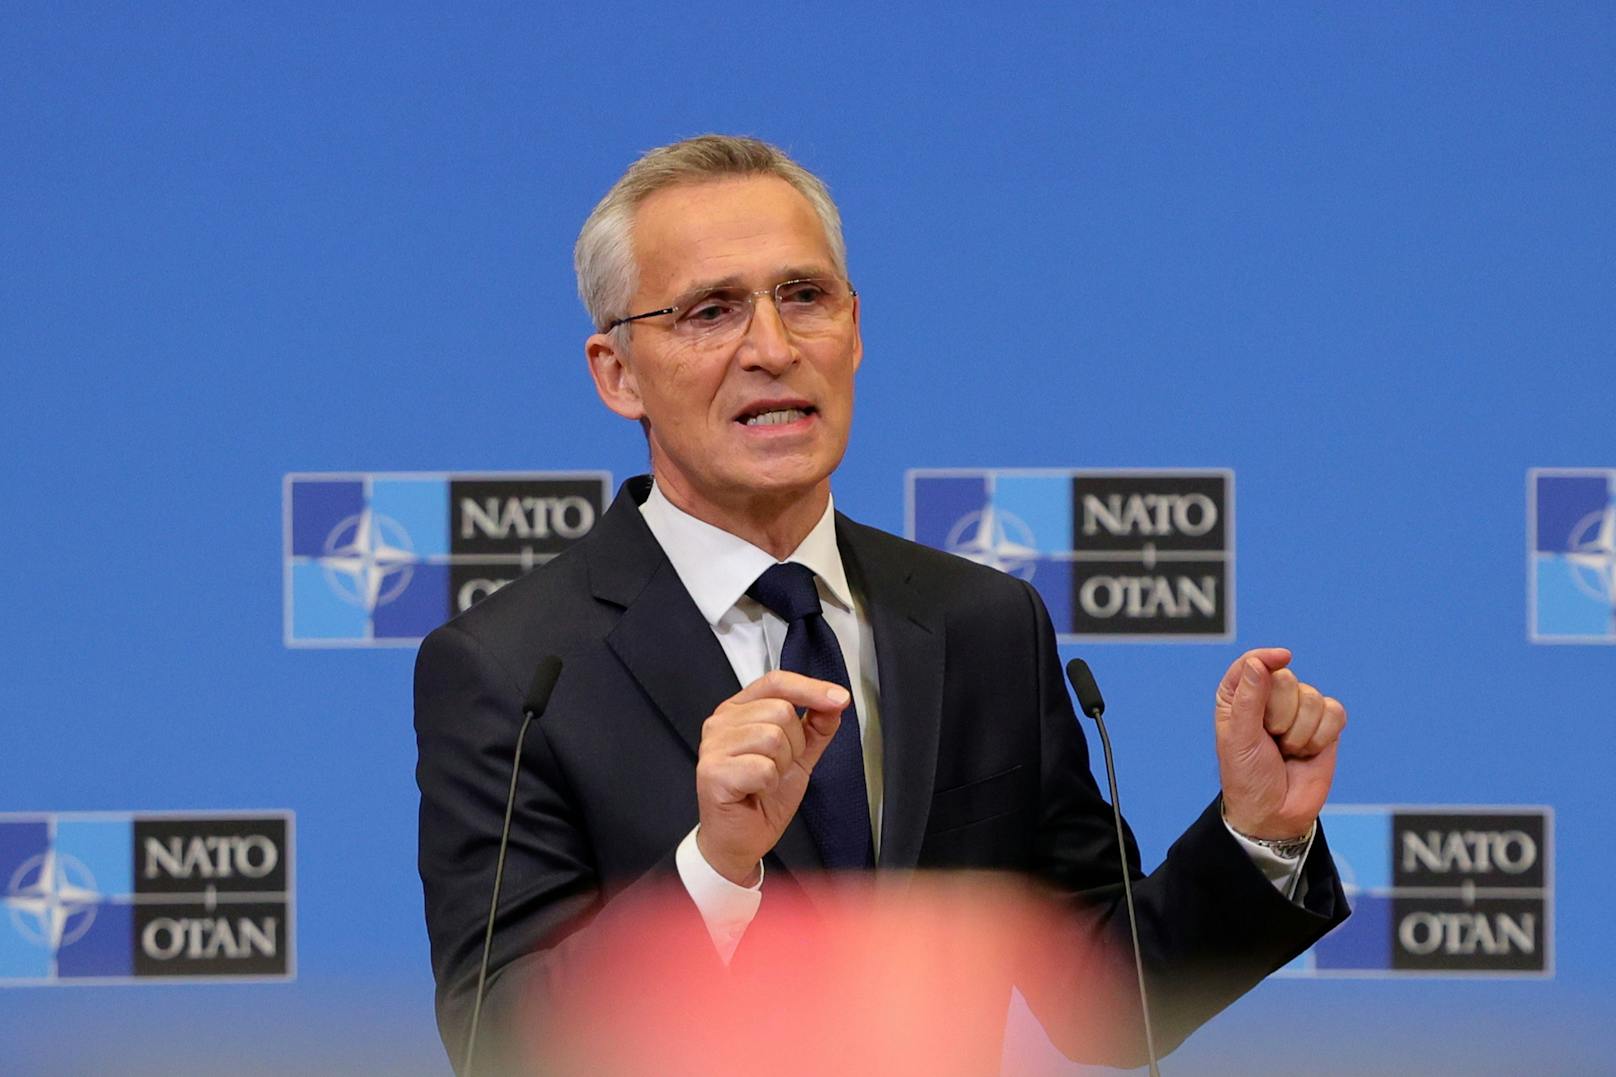 NATO Generalsekretär Jens Stoltenberg ruft zu Waffenlieferungen in die Ukraine auf. Nur so sei "Frieden" möglich.